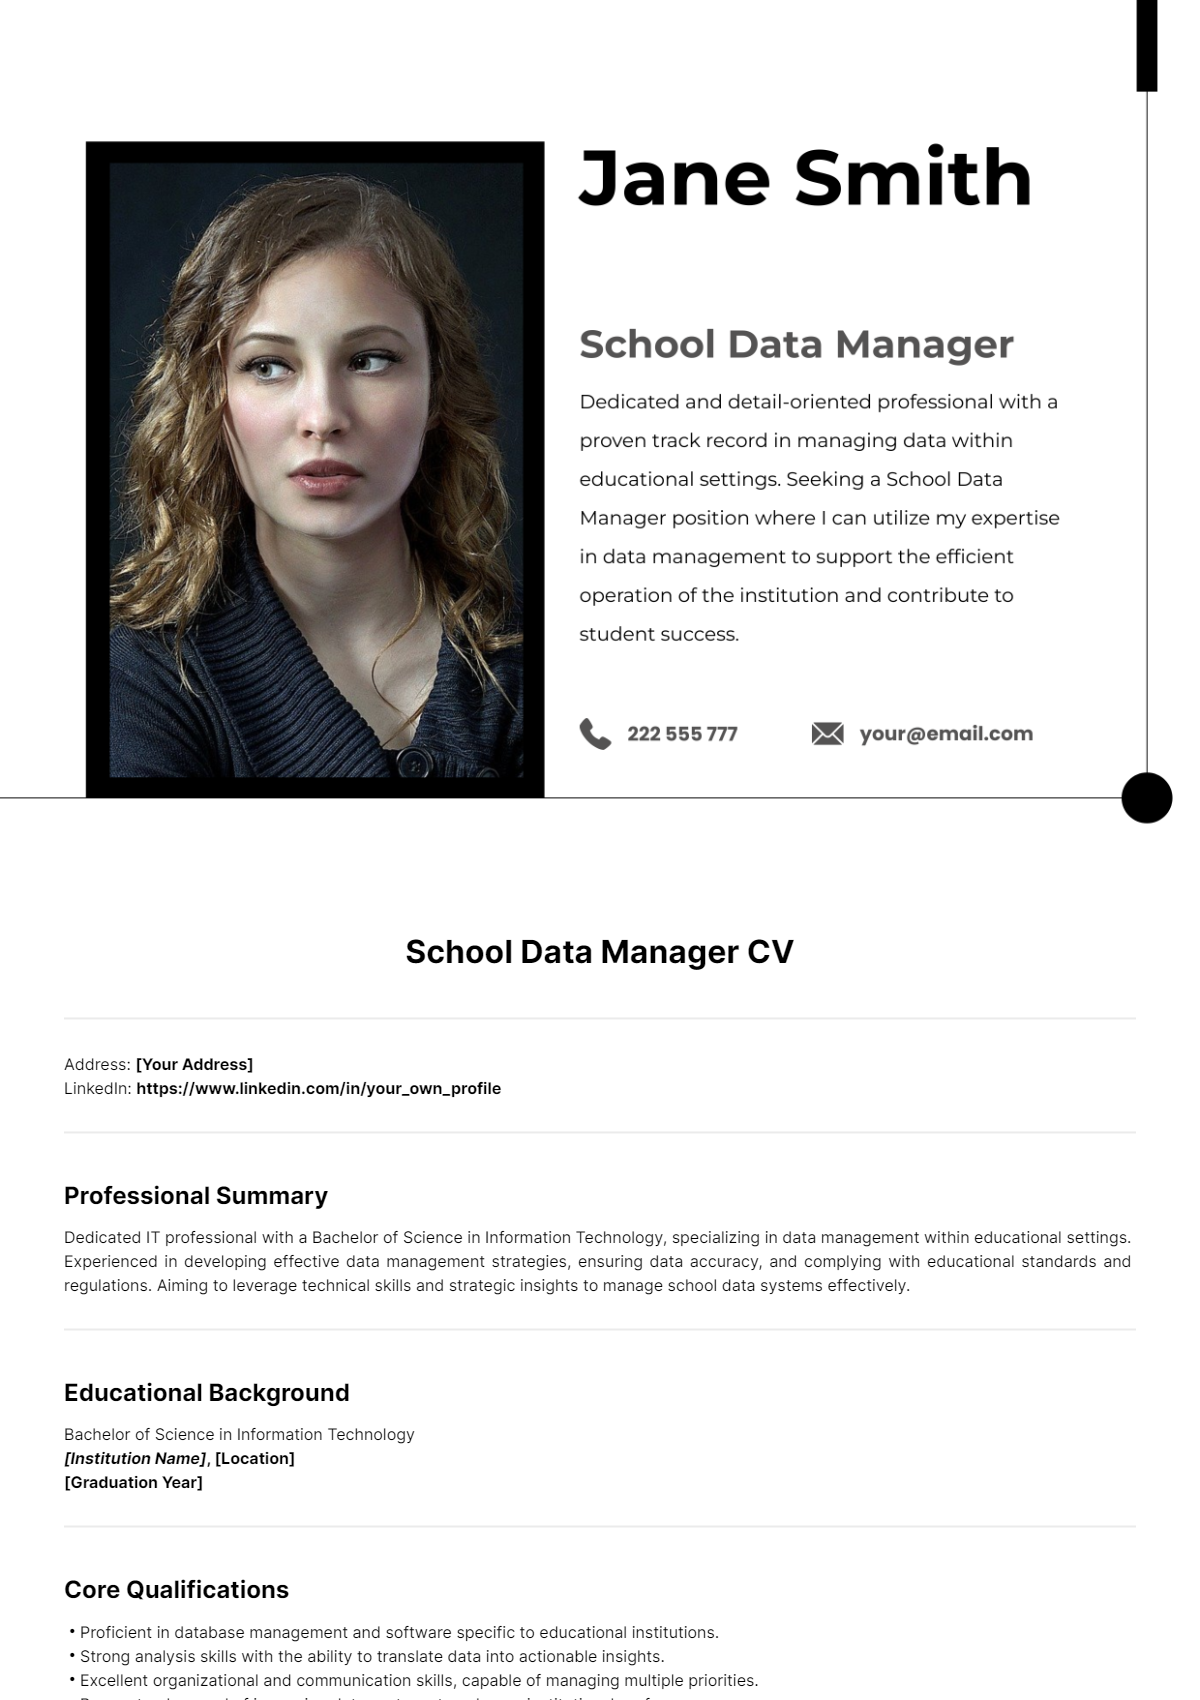 School Data Manager CV Template